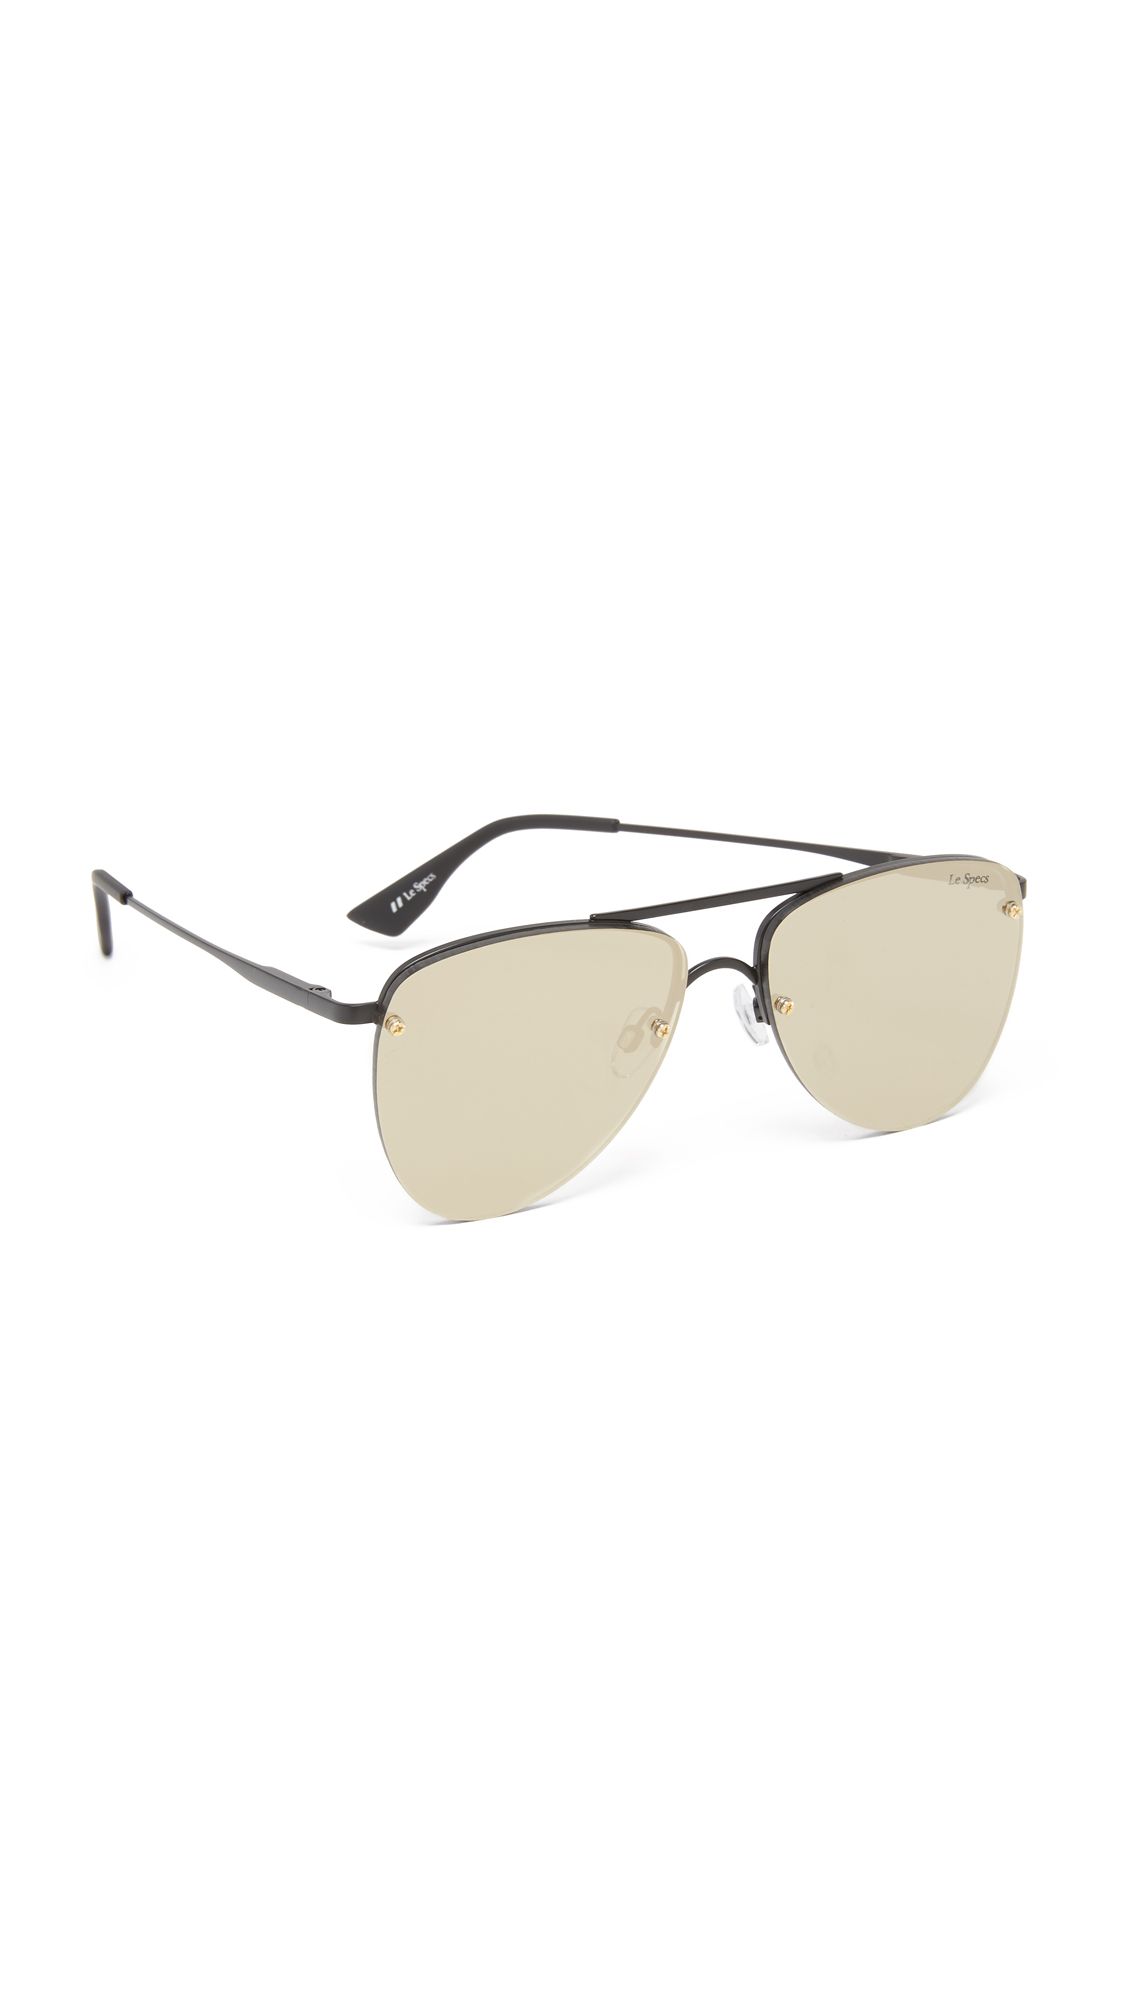 Le Specs The Prince Mirrored Sunglasses - Matte Black/Gold Revo | Shopbop